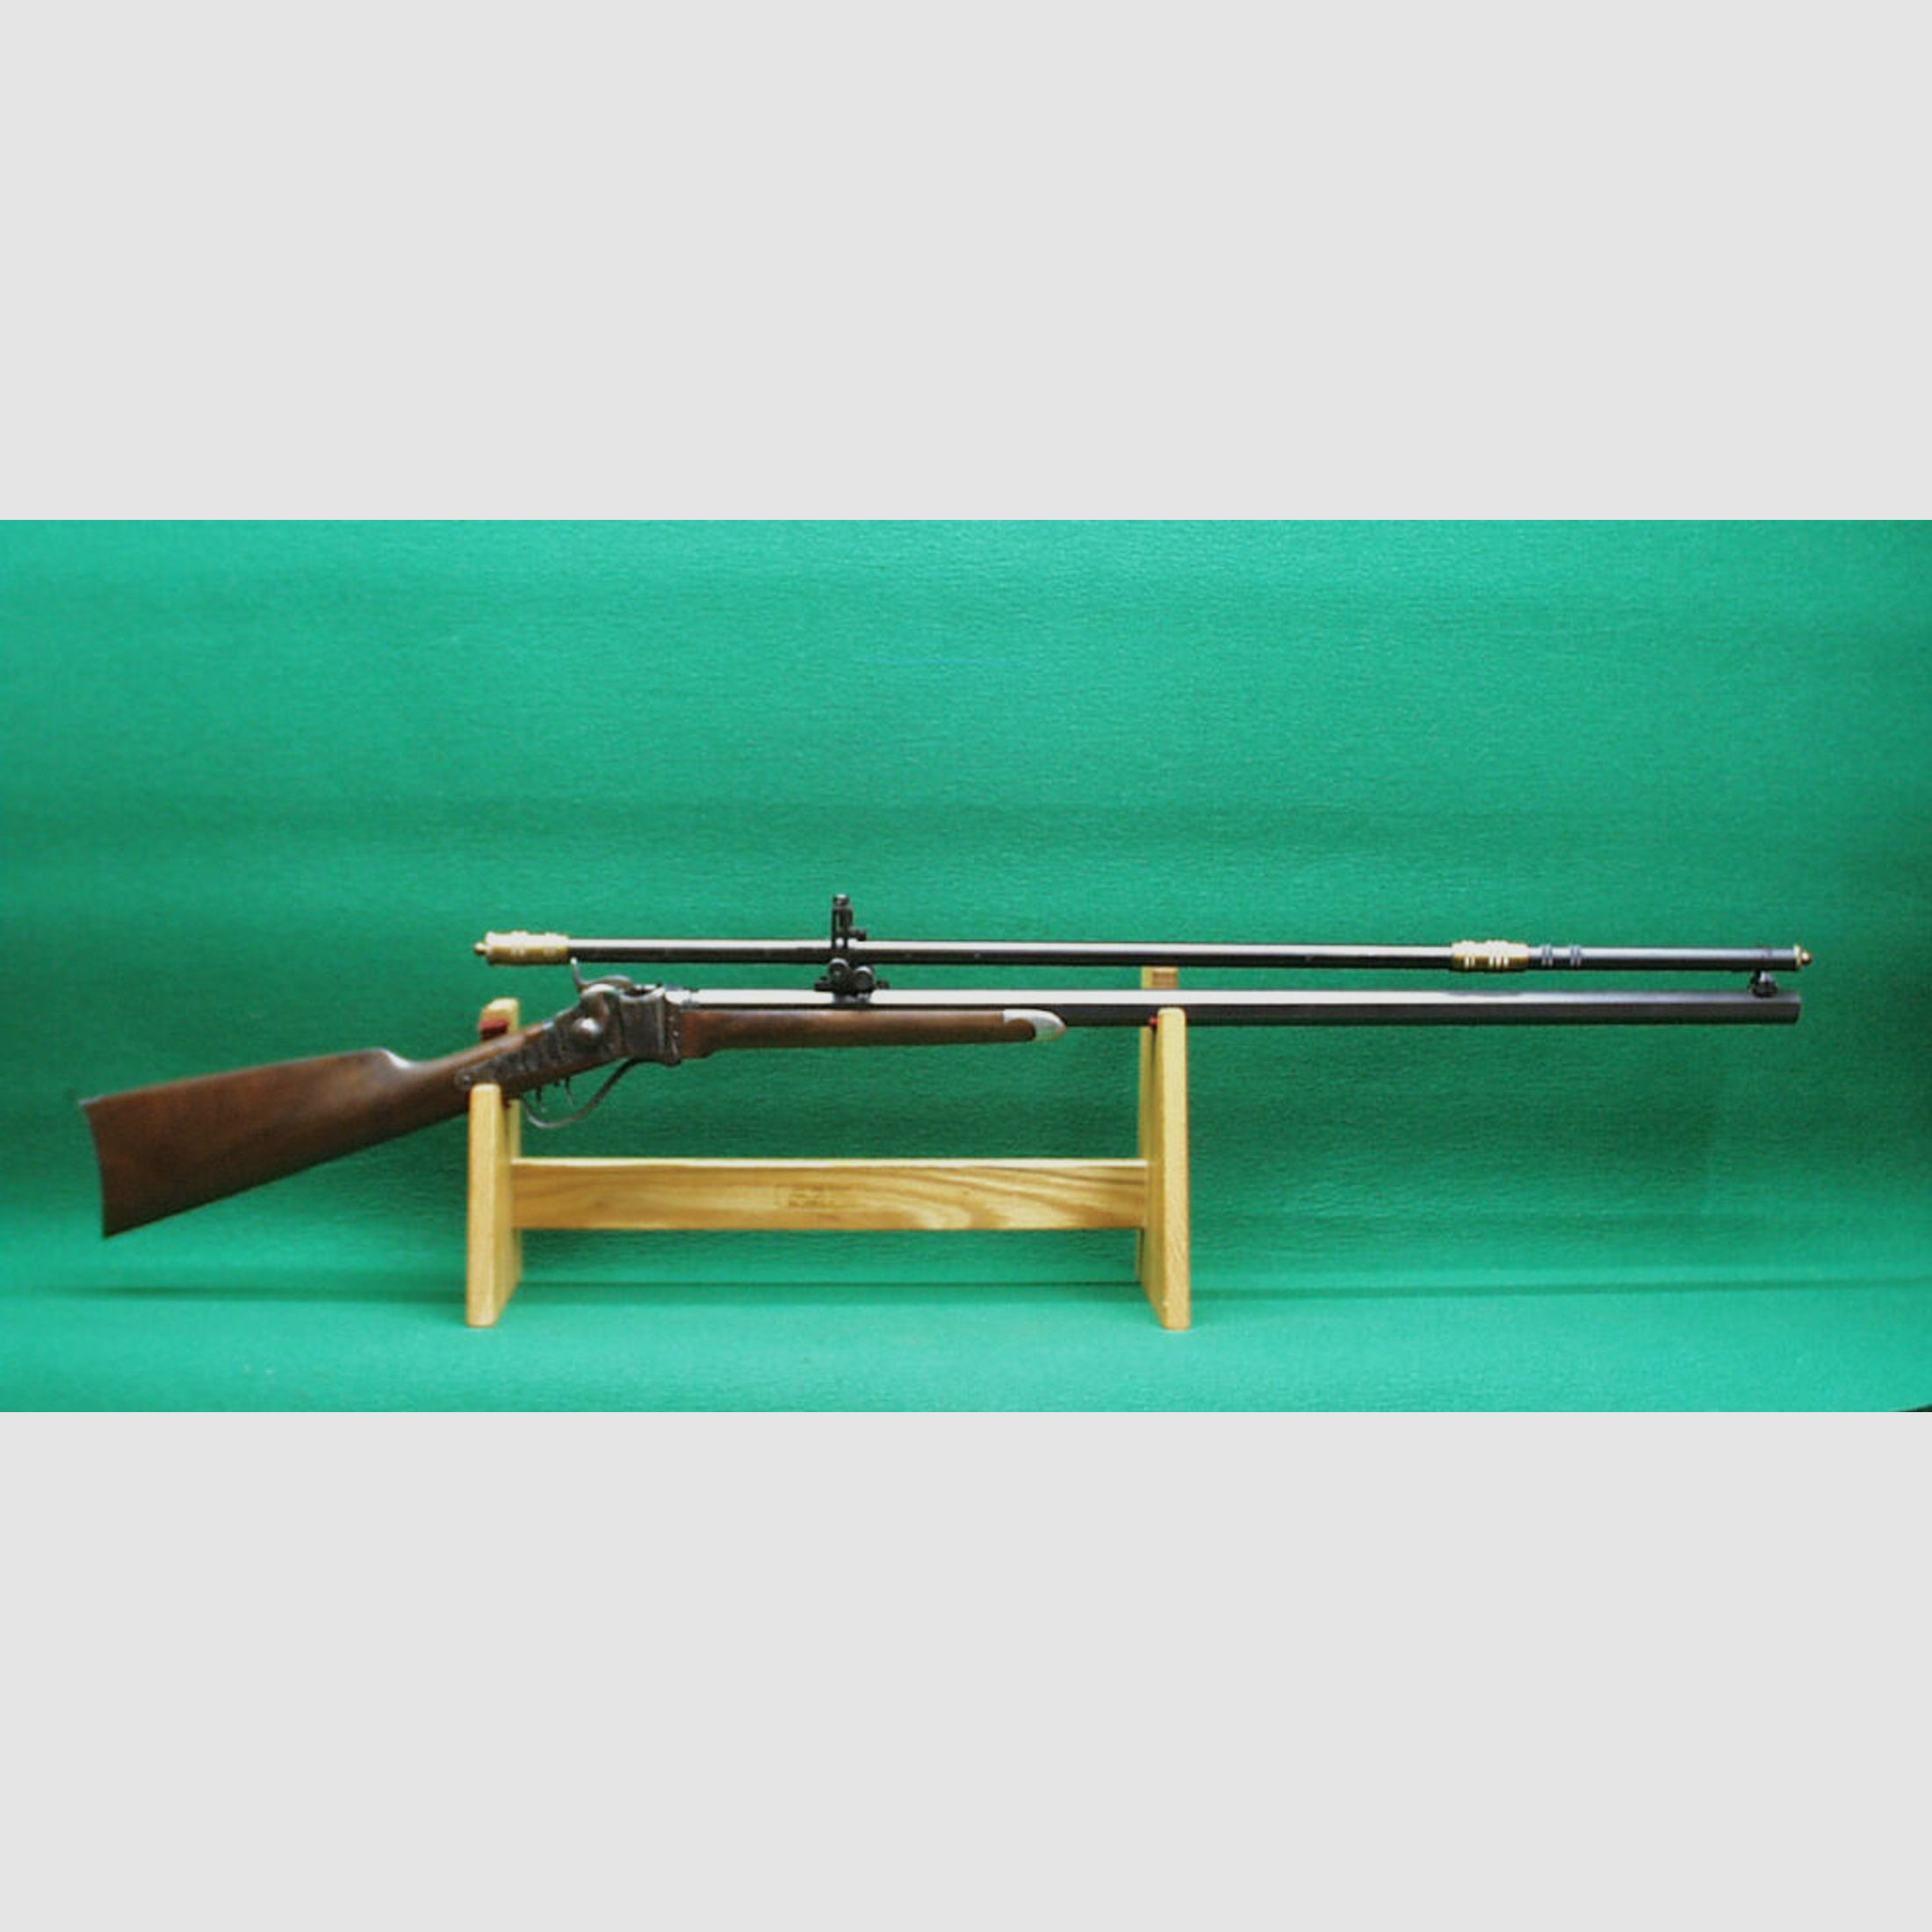 Shiloh	 Sharps Mod. 1874 Hartford Rifle